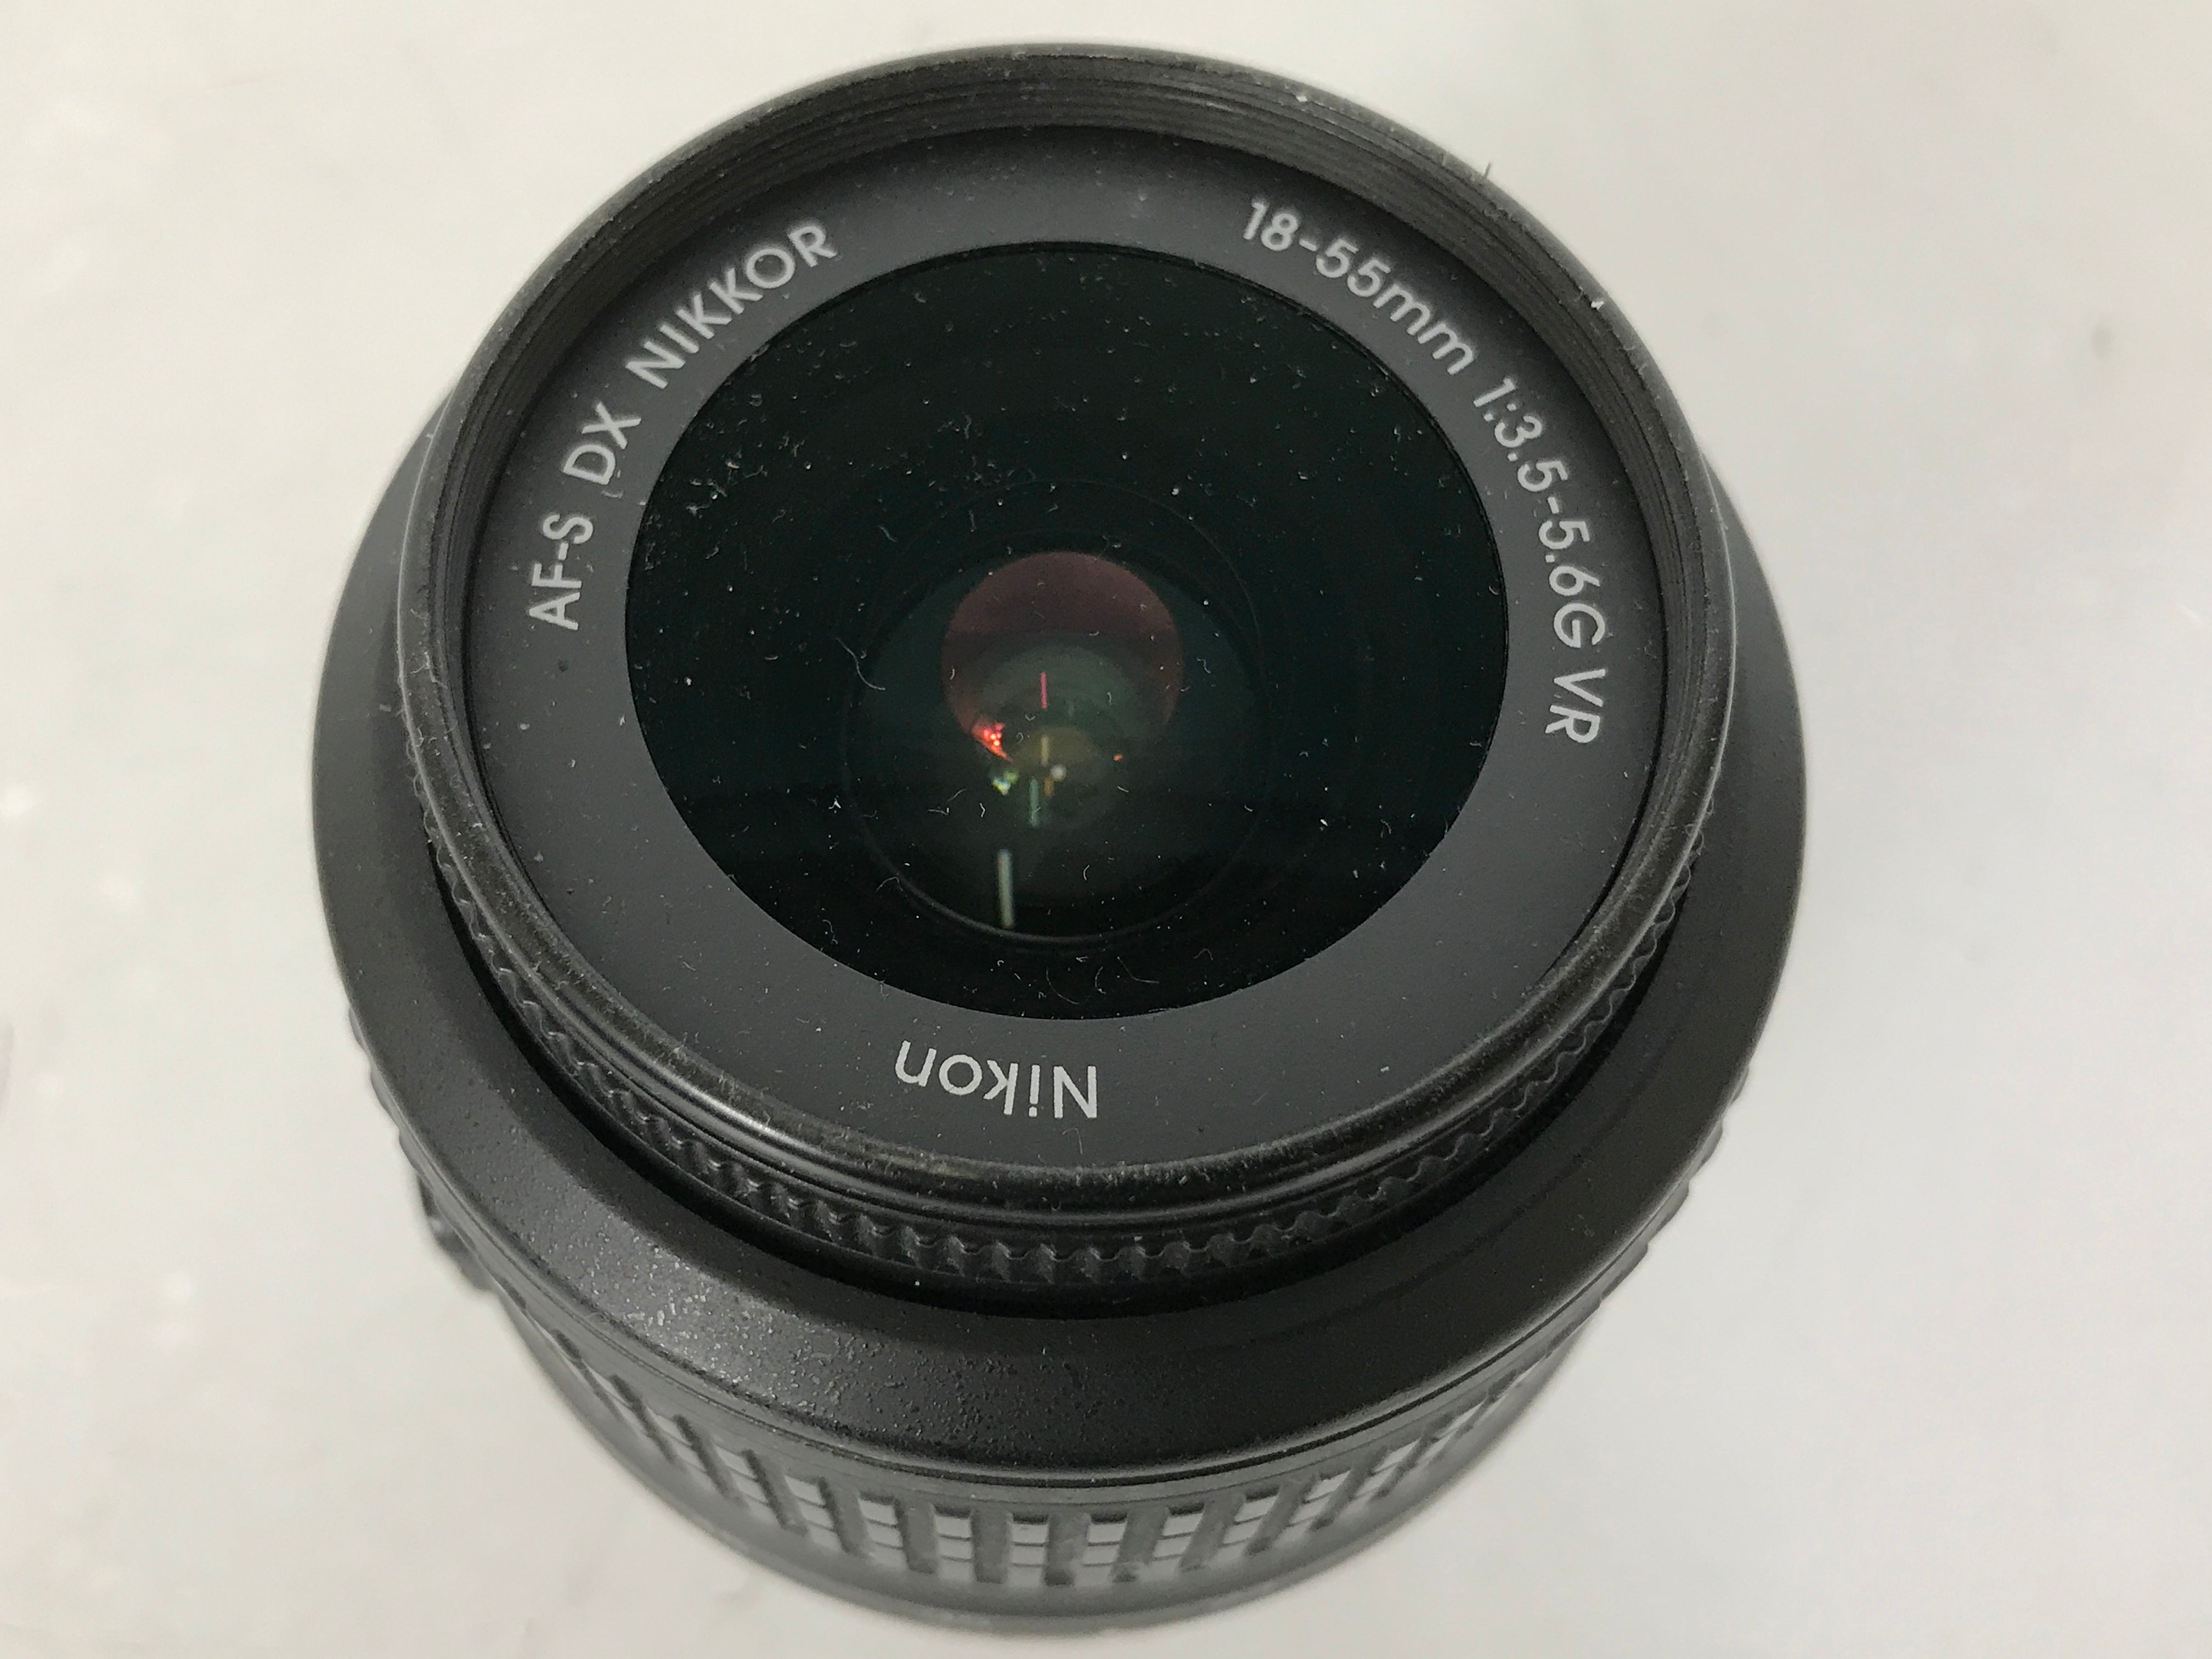 Nikon AF-S 18-55mm DX Nikkor f/3.5-5.6G VR Camera Lens